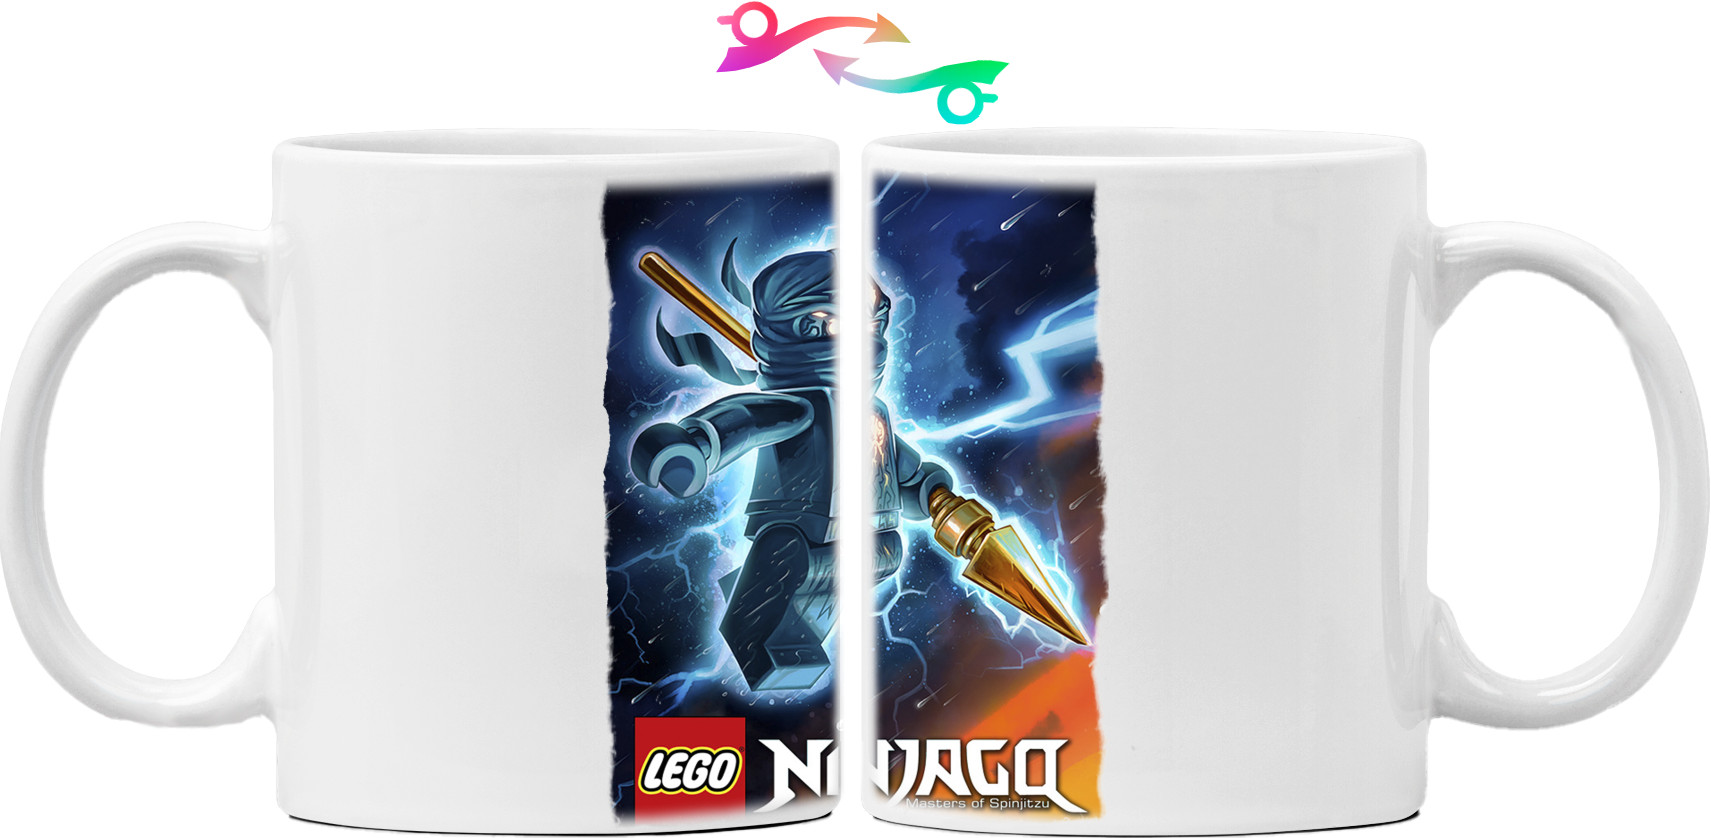 Lego Ninjago 12